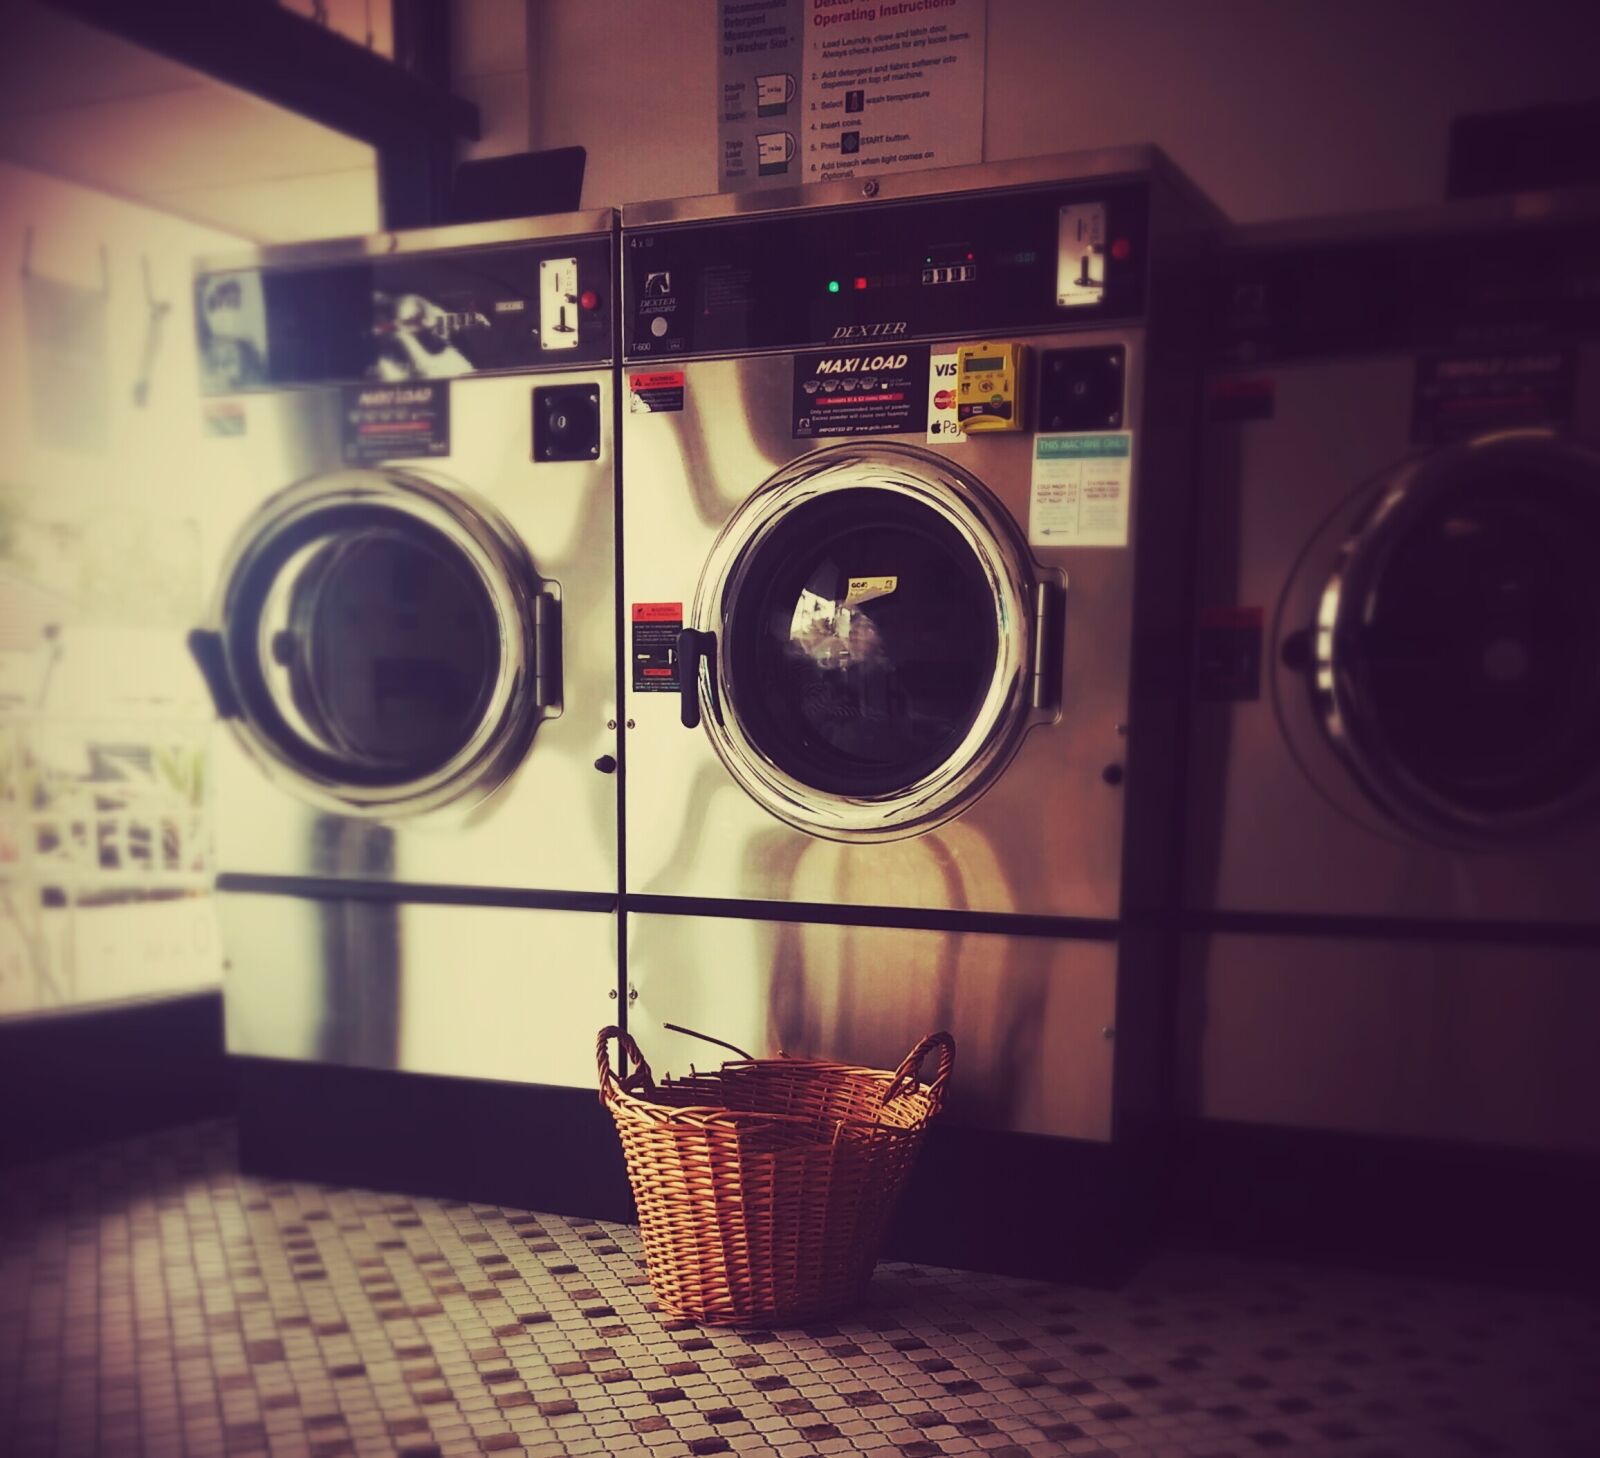 LG D80 sample photo. Laundromat, launderette, washing photography